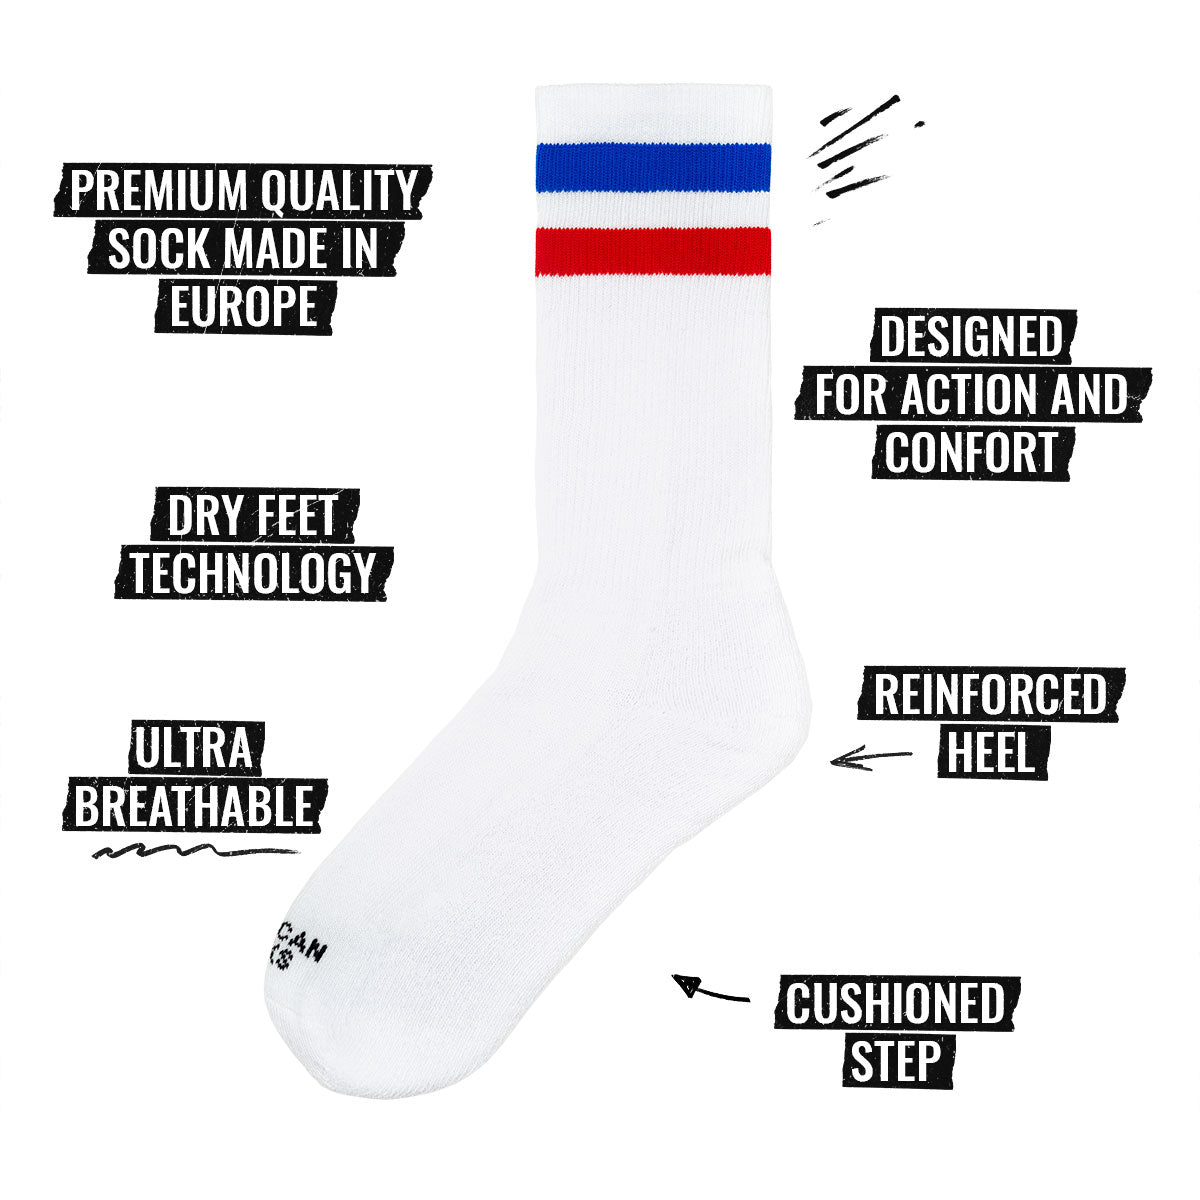 Image des spécifications des chaussettes Mid High d'American Socks